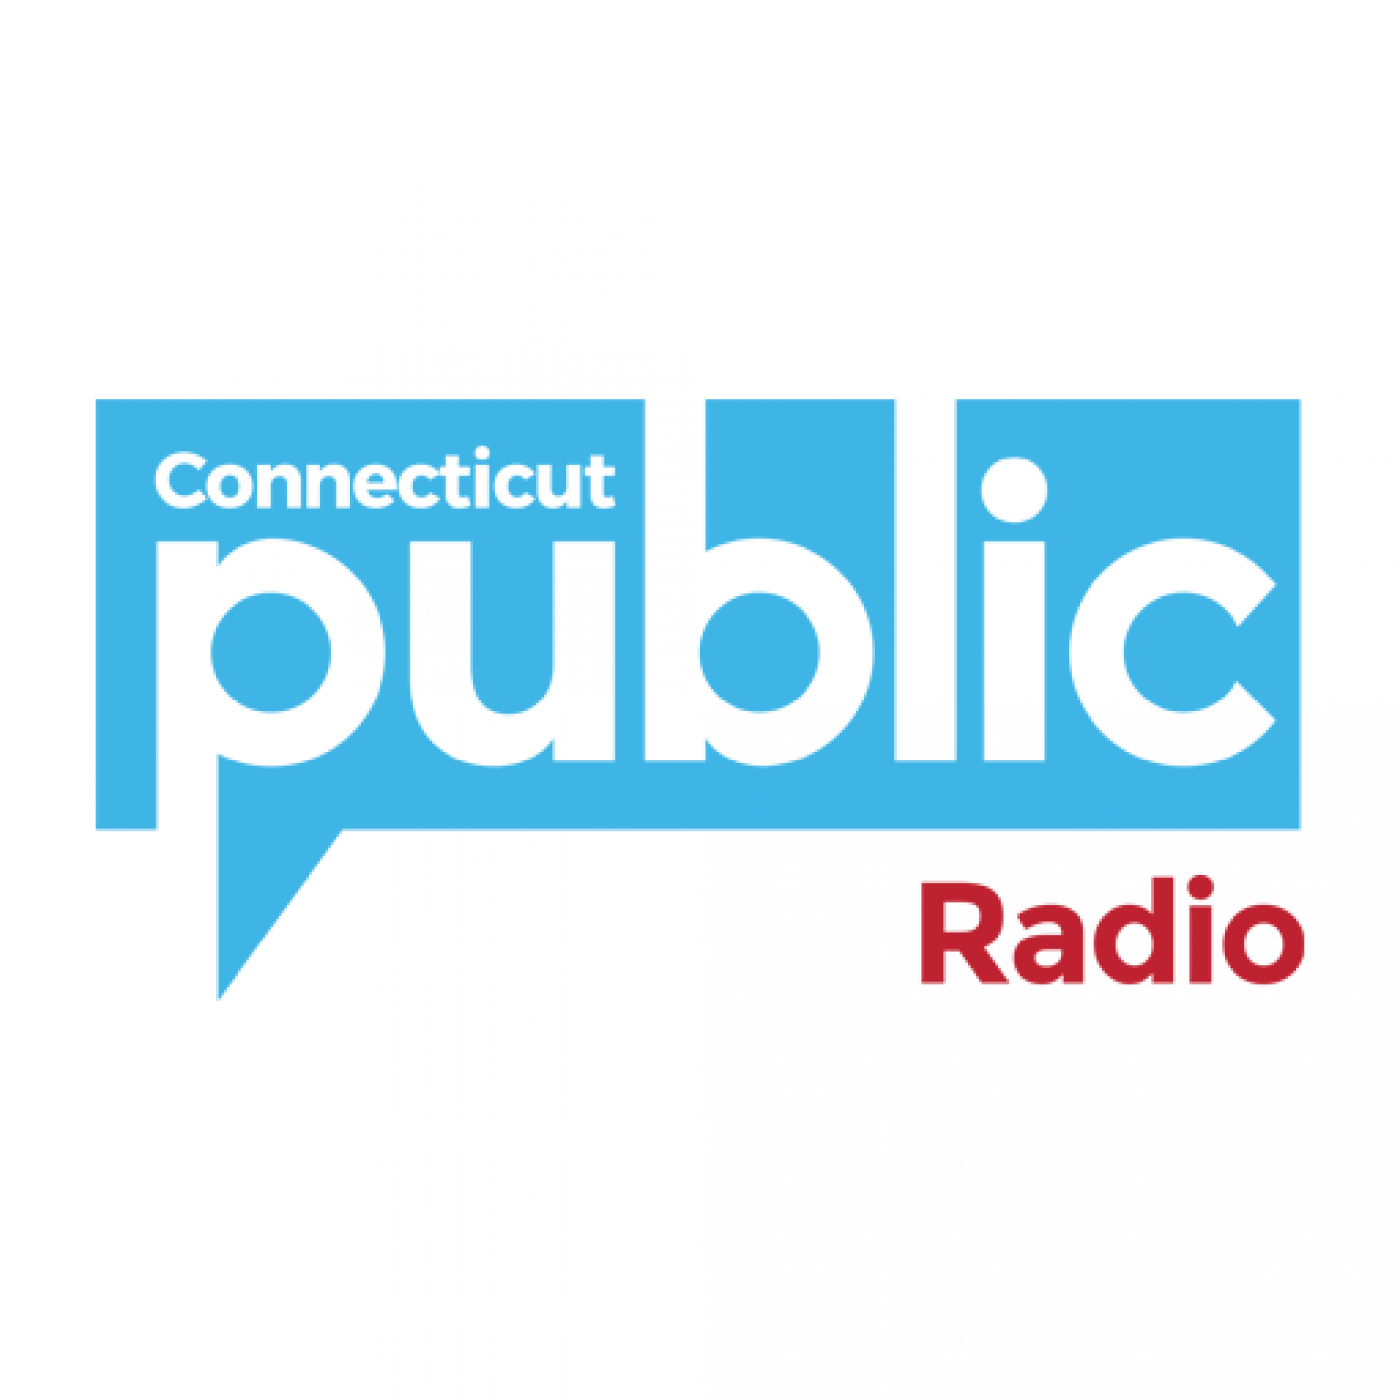 Connecticut Public Radio